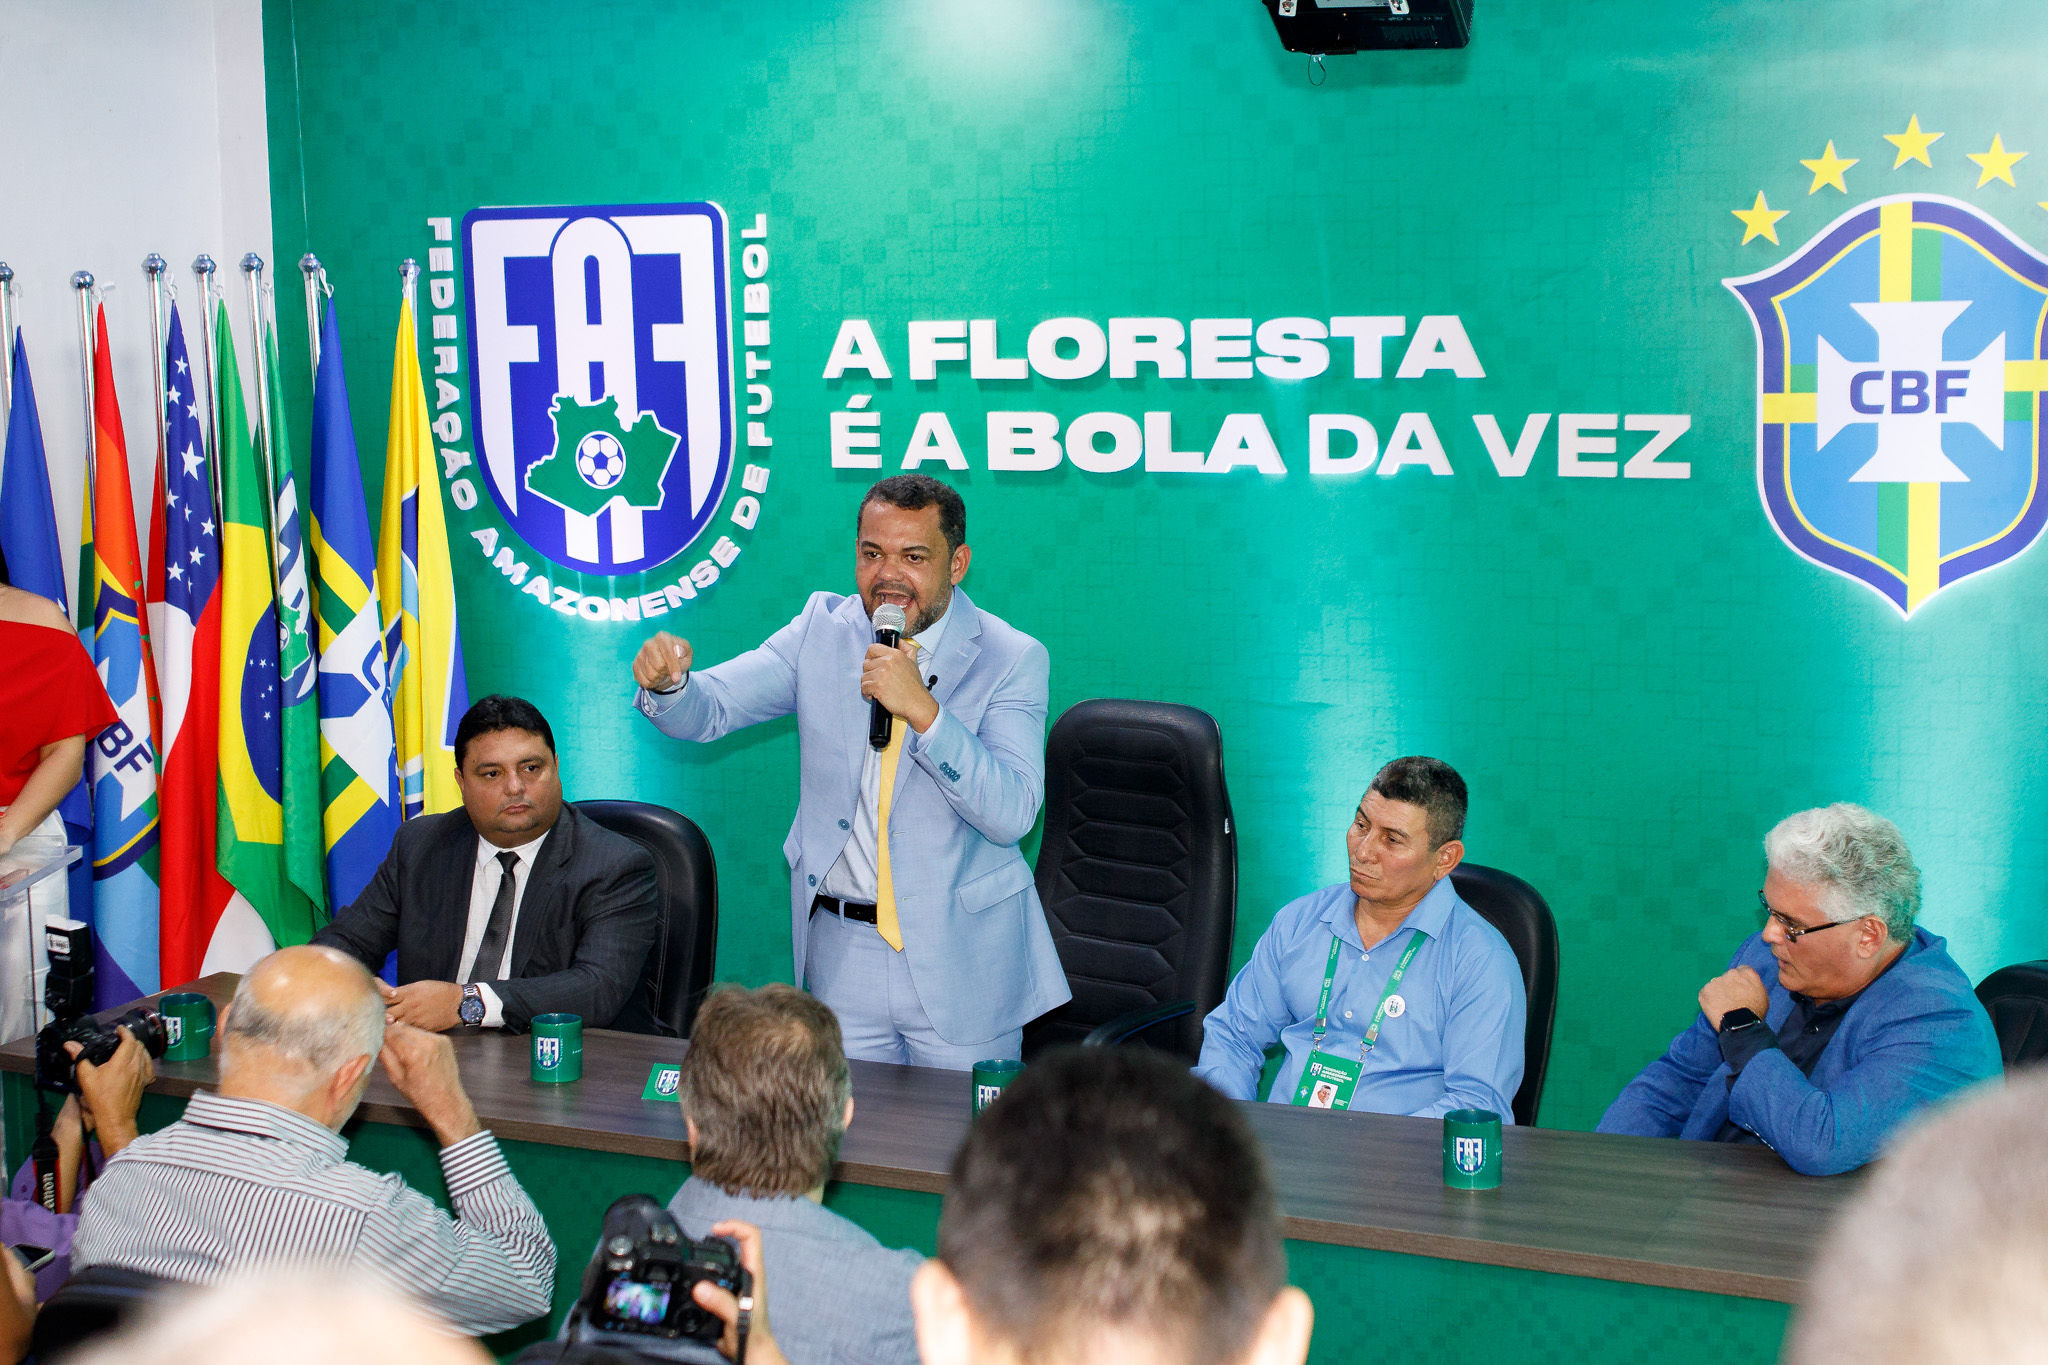 Novo comando da FAF lança identidade visual da entidade e o slogan